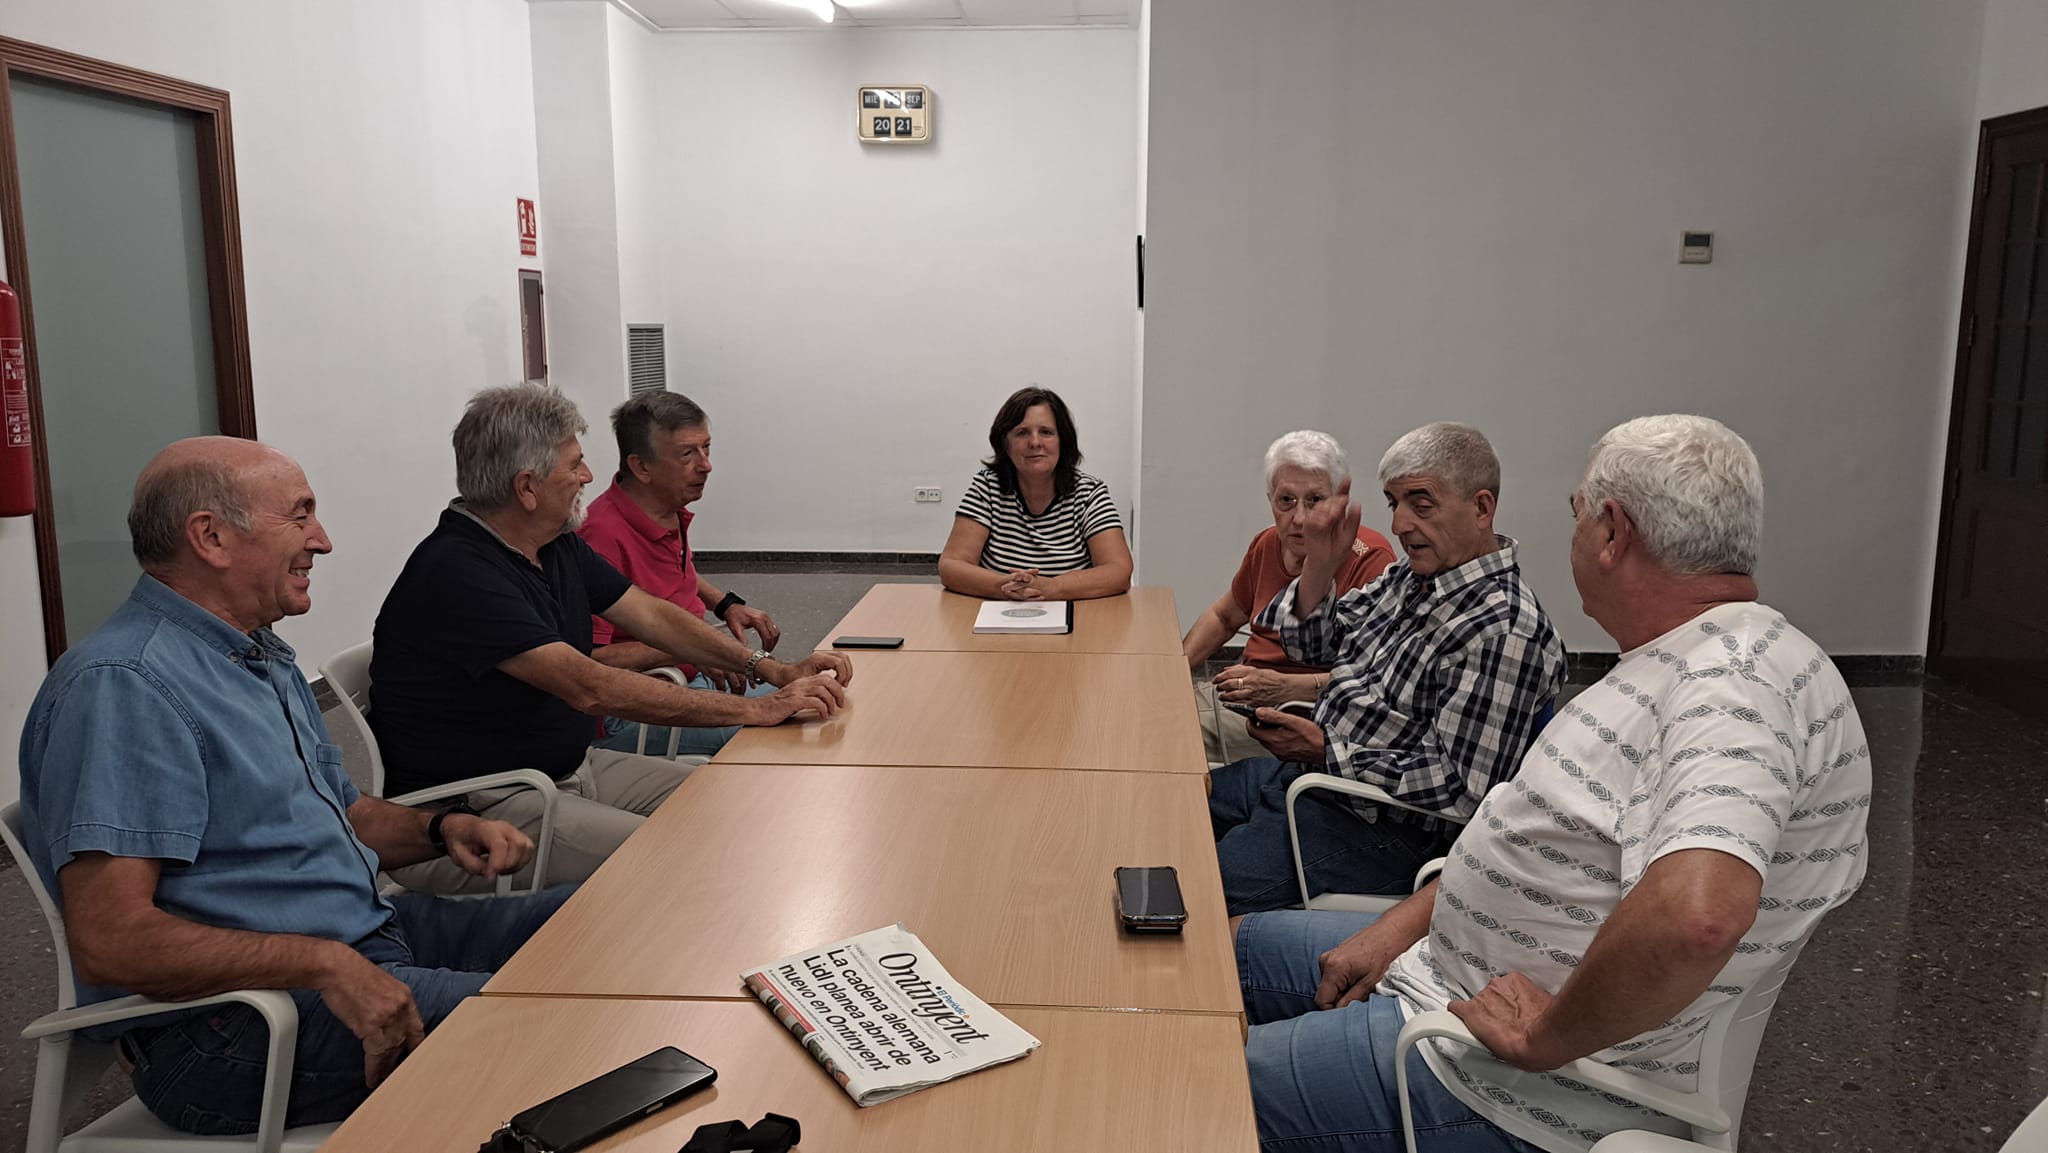 La junta vecinal de Sant Josep dimite y plantea la disolución de la asociación El Periódico de Ontinyent - Noticias en Ontinyent